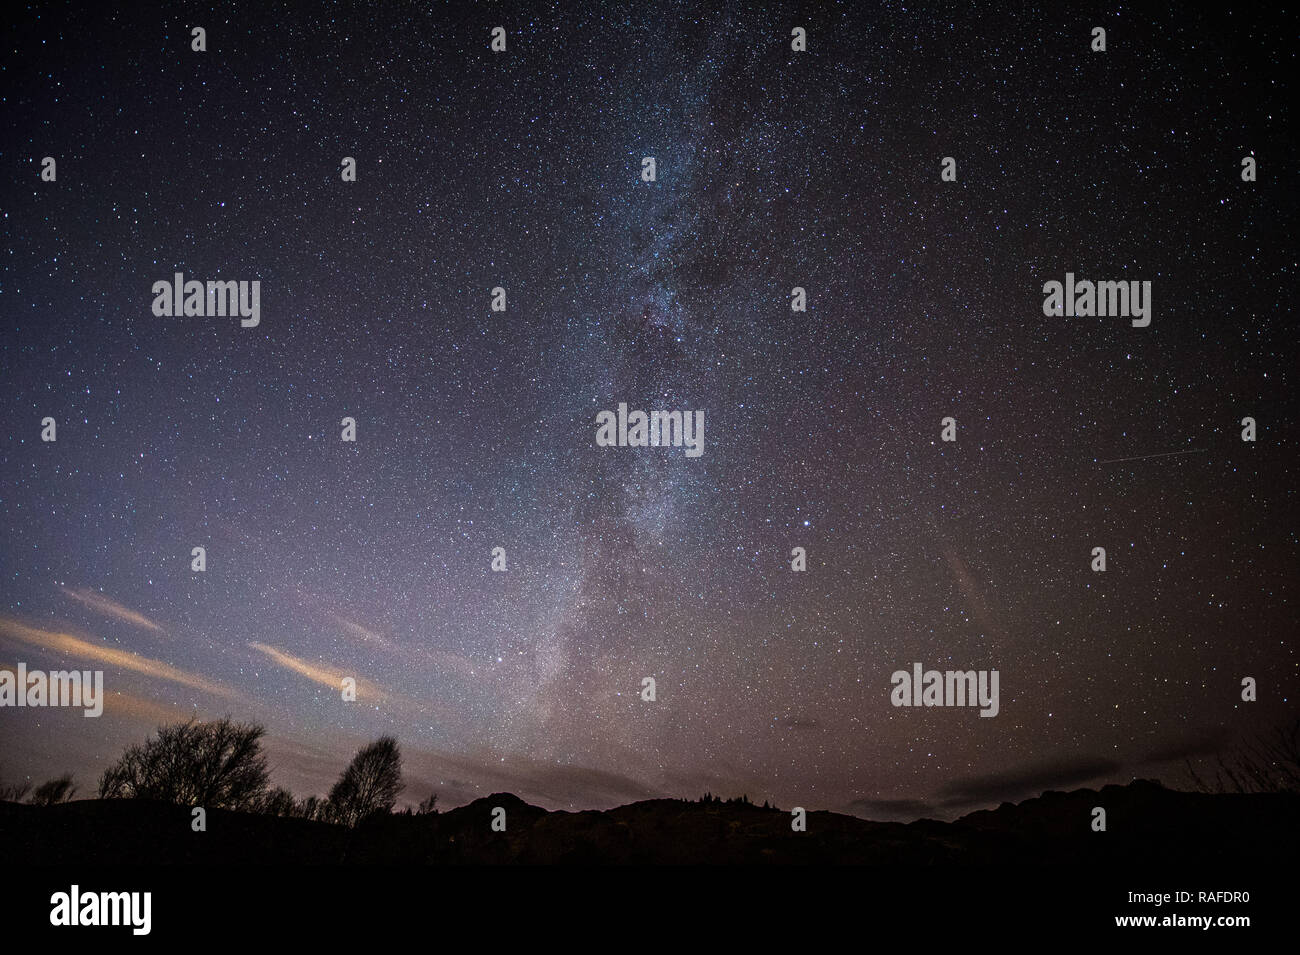 Via Lattea, le stelle e il cielo di notte come visto dalla straordinaria in una bellissima zona di Trossachs in Scozia, Stirling, Regno Unito - 1° gennaio 2019. Foto Stock